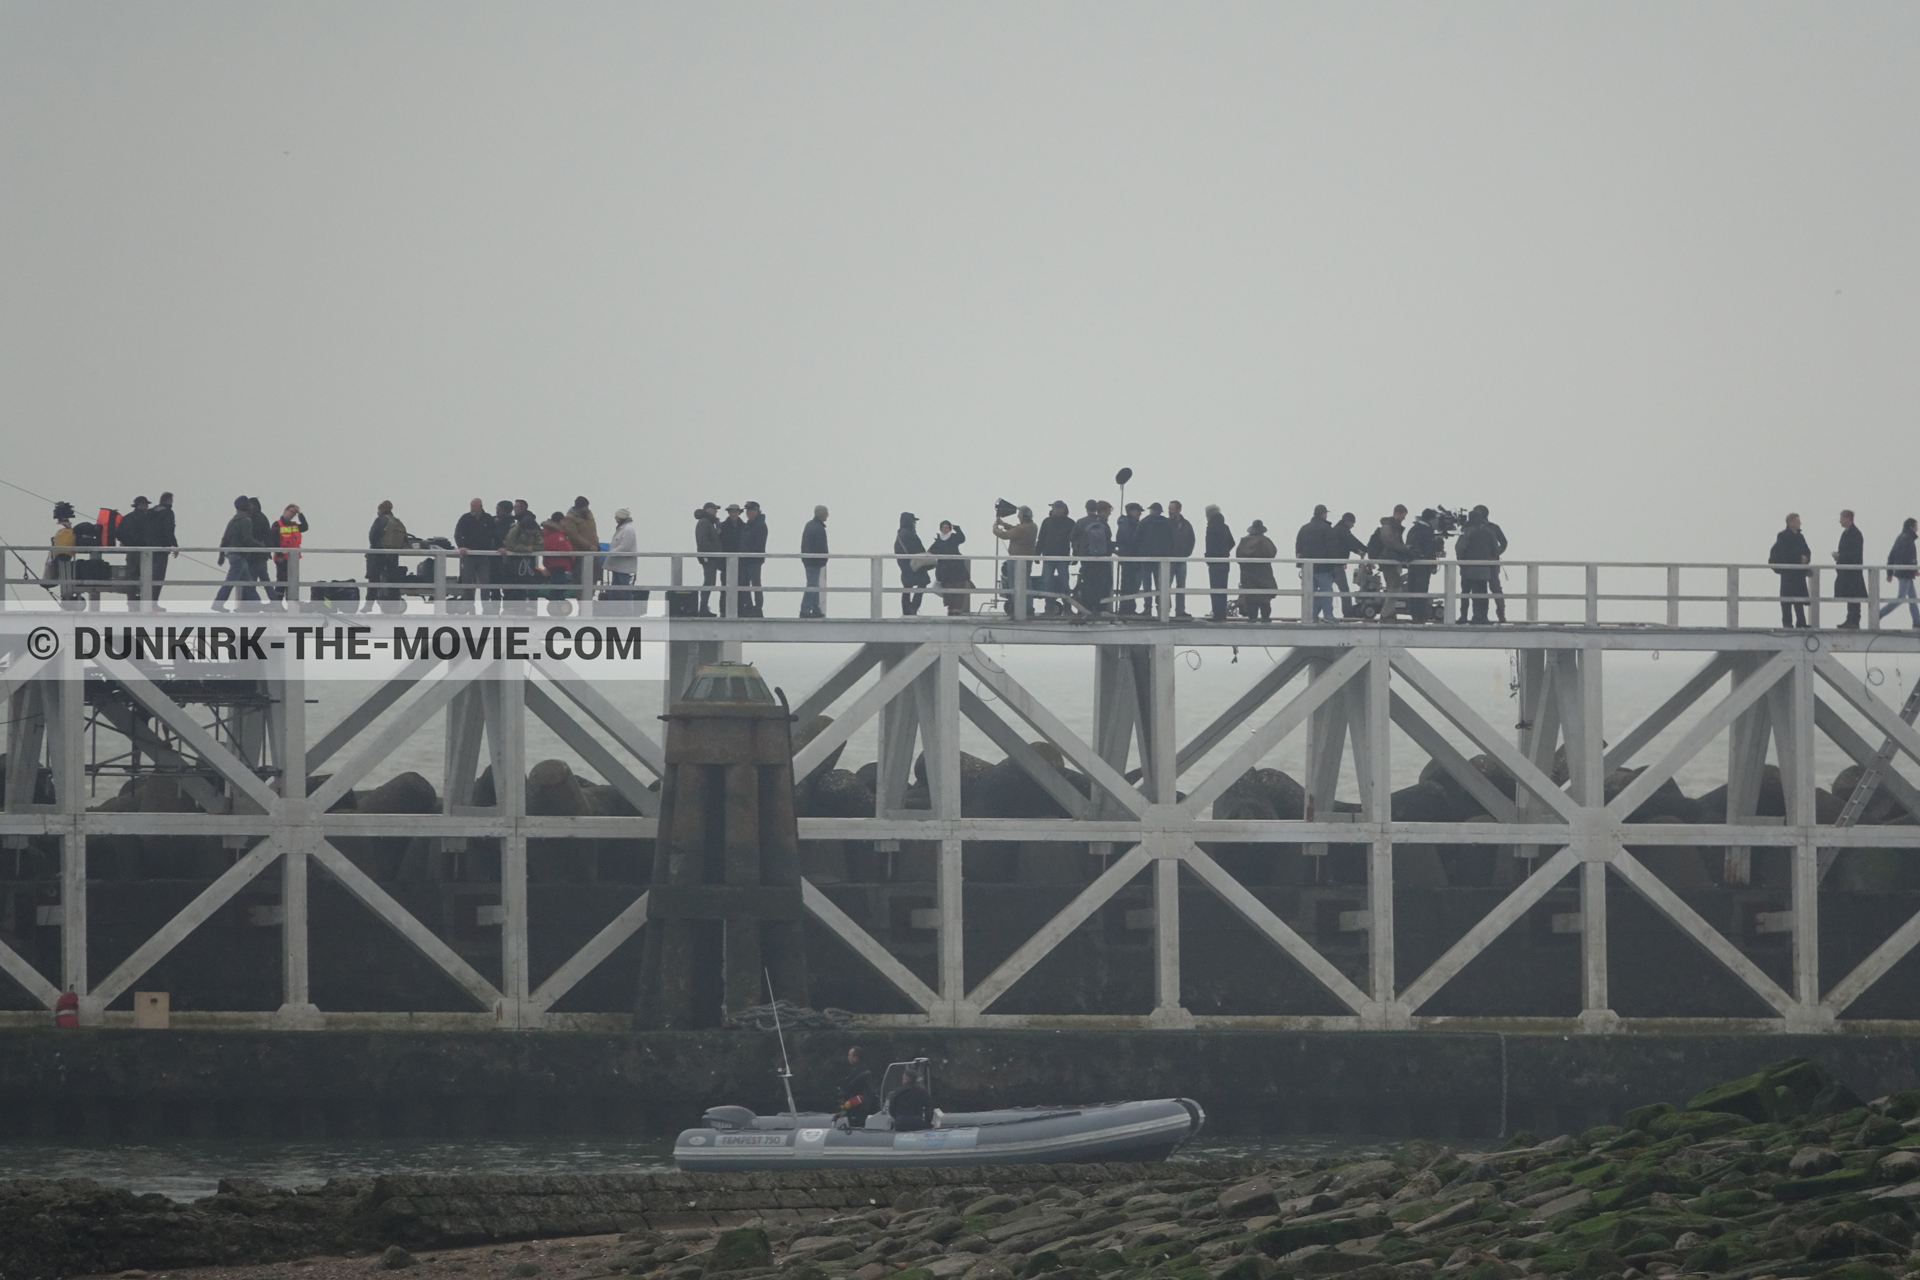 Photo avec ciel gris, jetée EST, équipe technique, zodiac, Nilo Otero,  des dessous du Film Dunkerque de Nolan